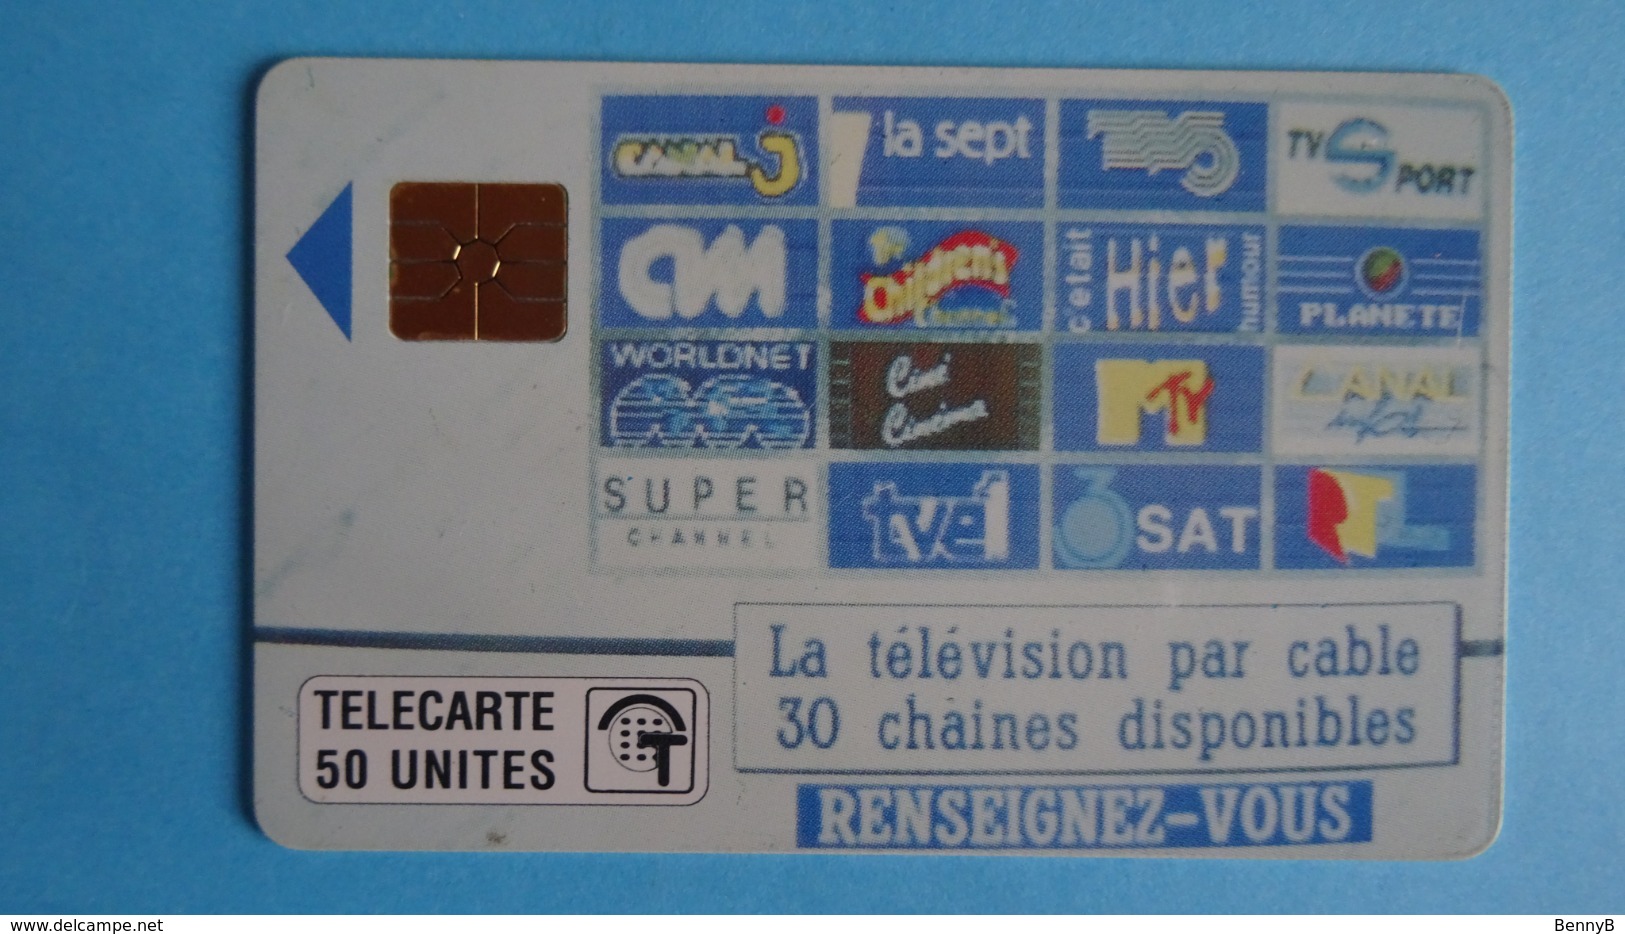 MONACO - TELECARTE "LA TELEVISION PAR CABLE 30 CHAINES.." 50u Tirage 50 000ex  - 01/1991 -  Sté Monég. Des Eaux - Monaco